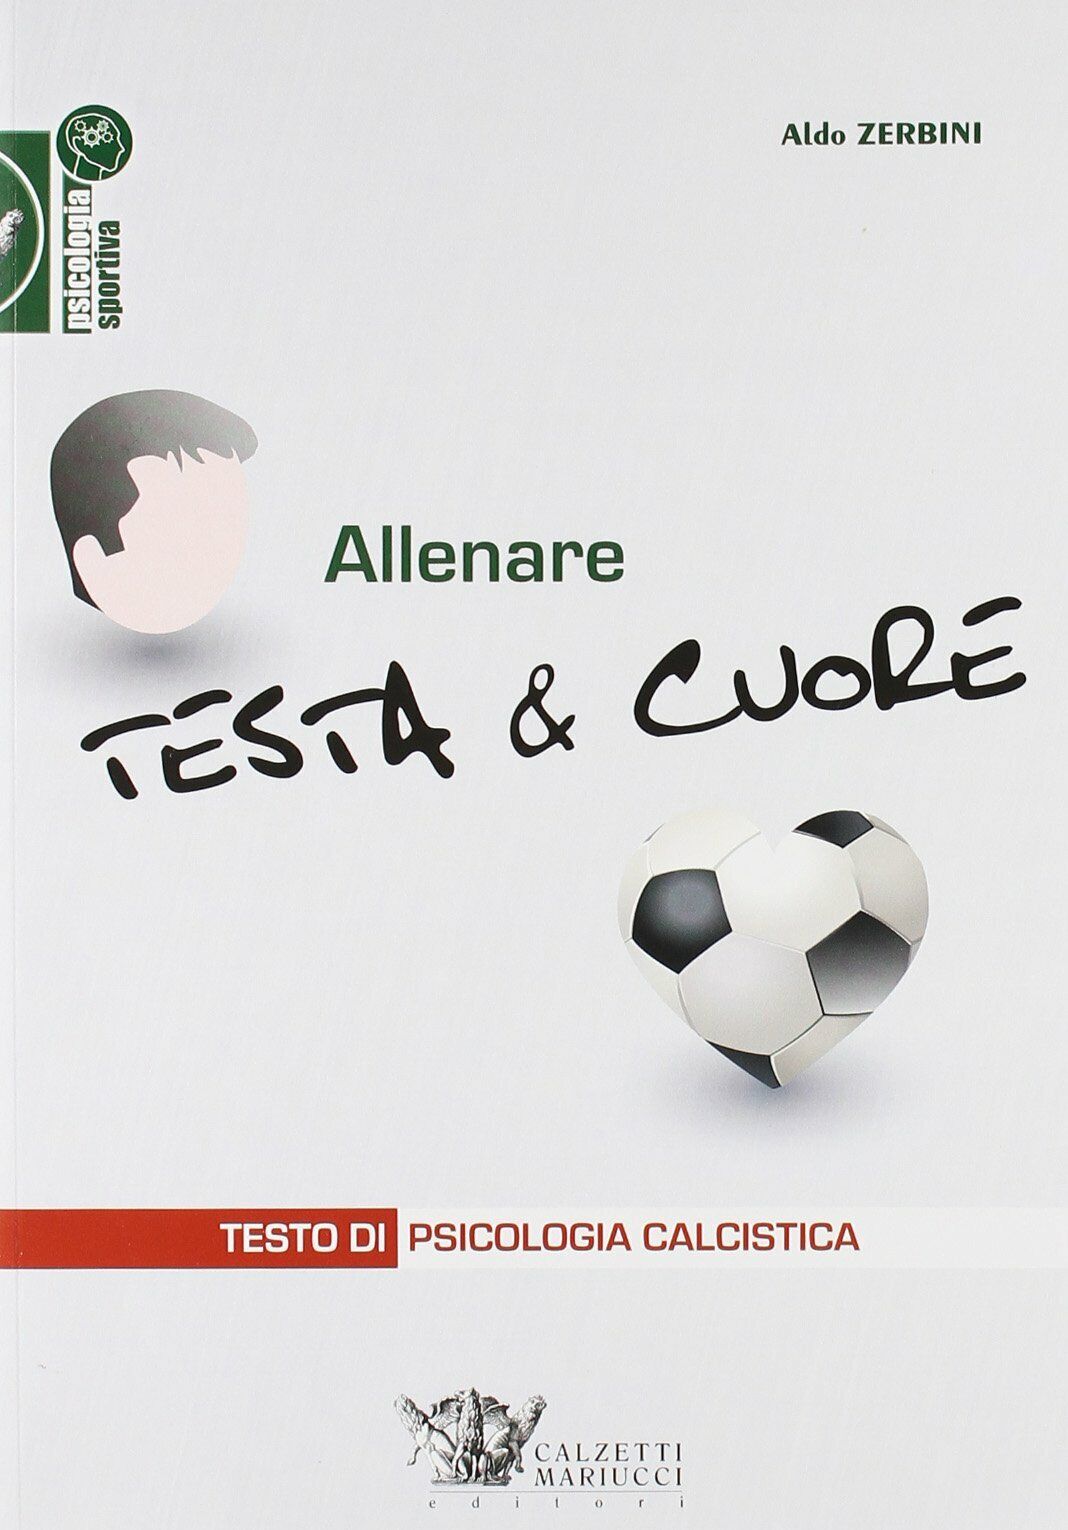 Allenare testa & cuore - Aldo Zerbini - Calzetti Mariucci, 2011